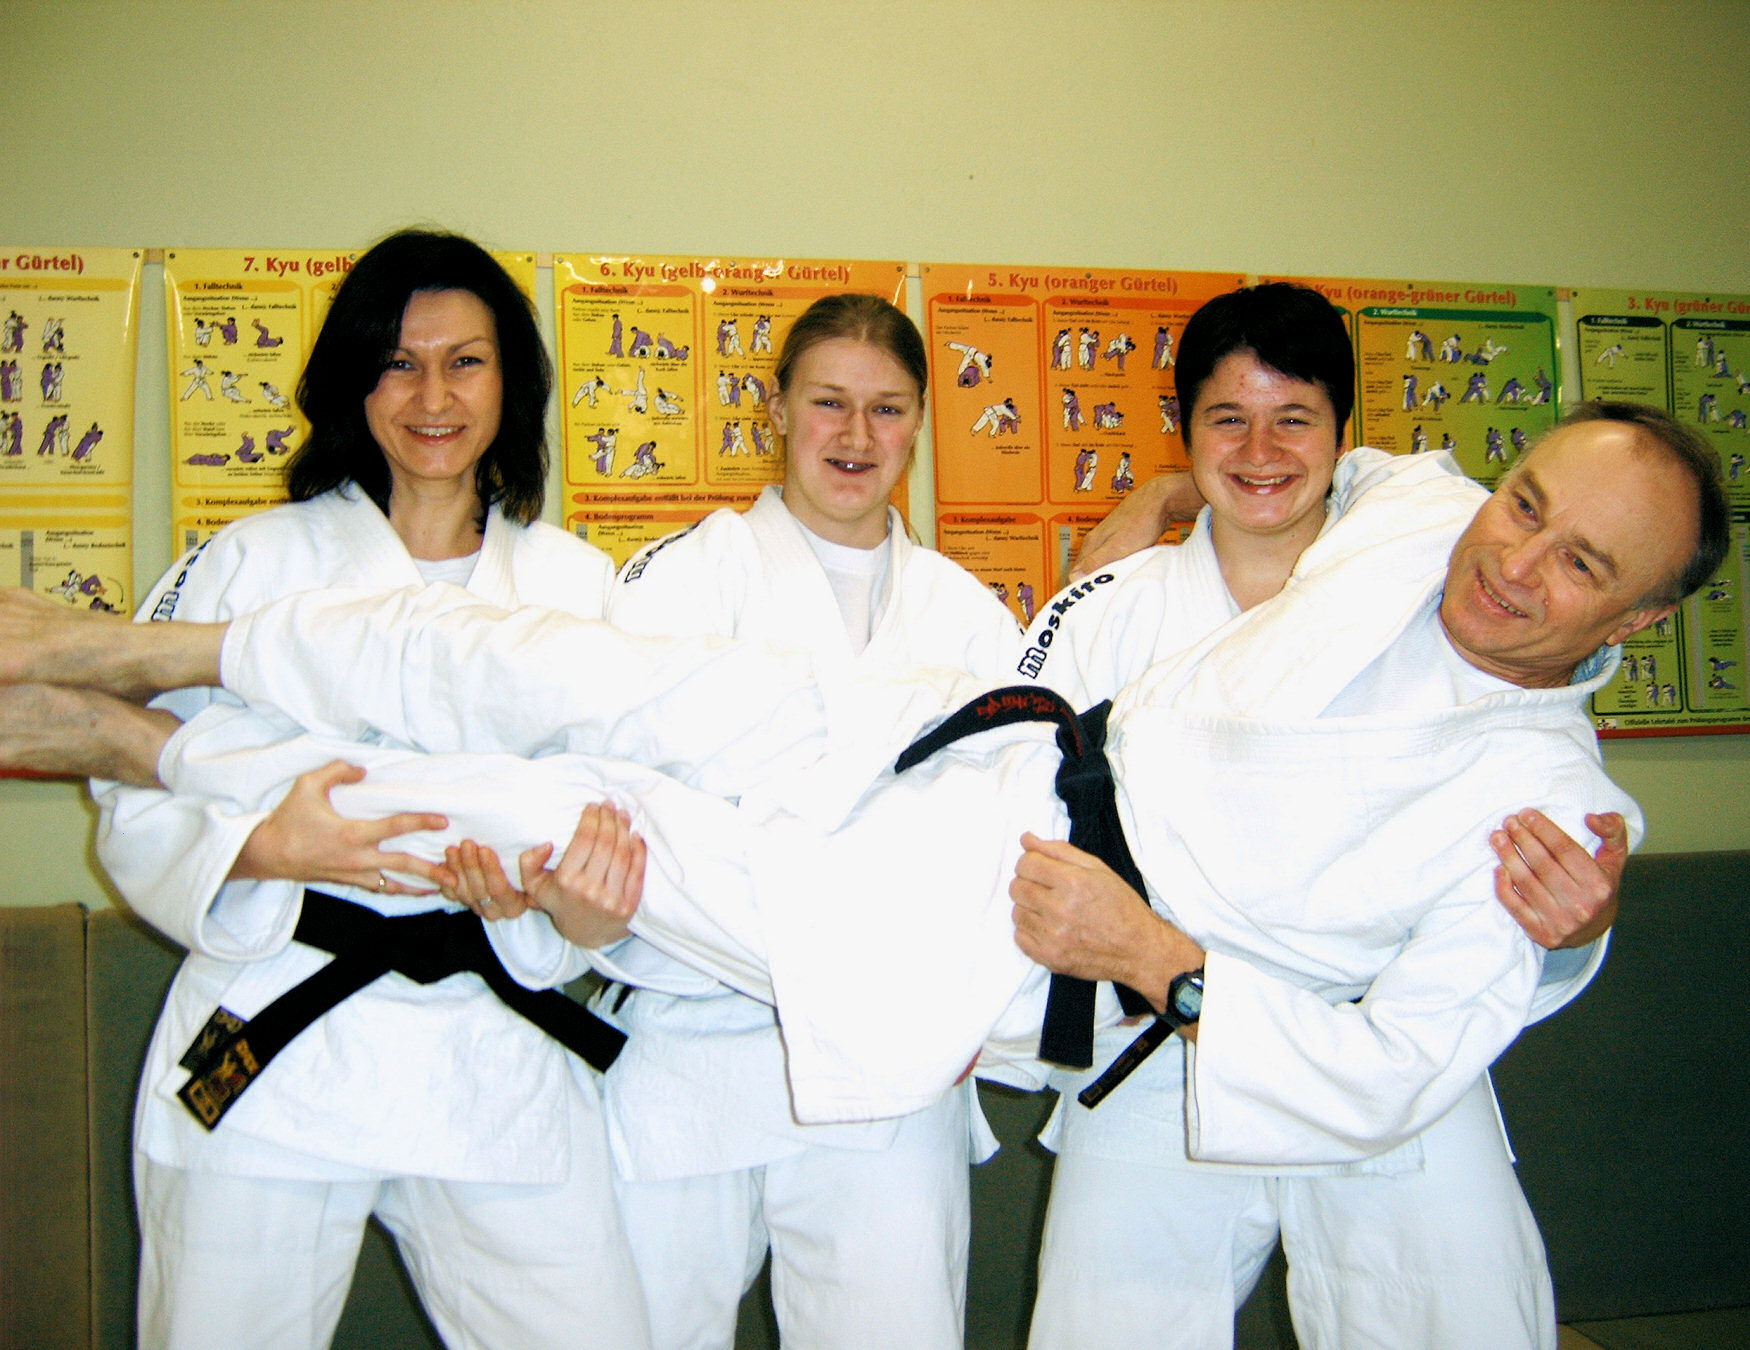 Drei neue Dan-Trägerinnen beim Judo-Club Katlenburg